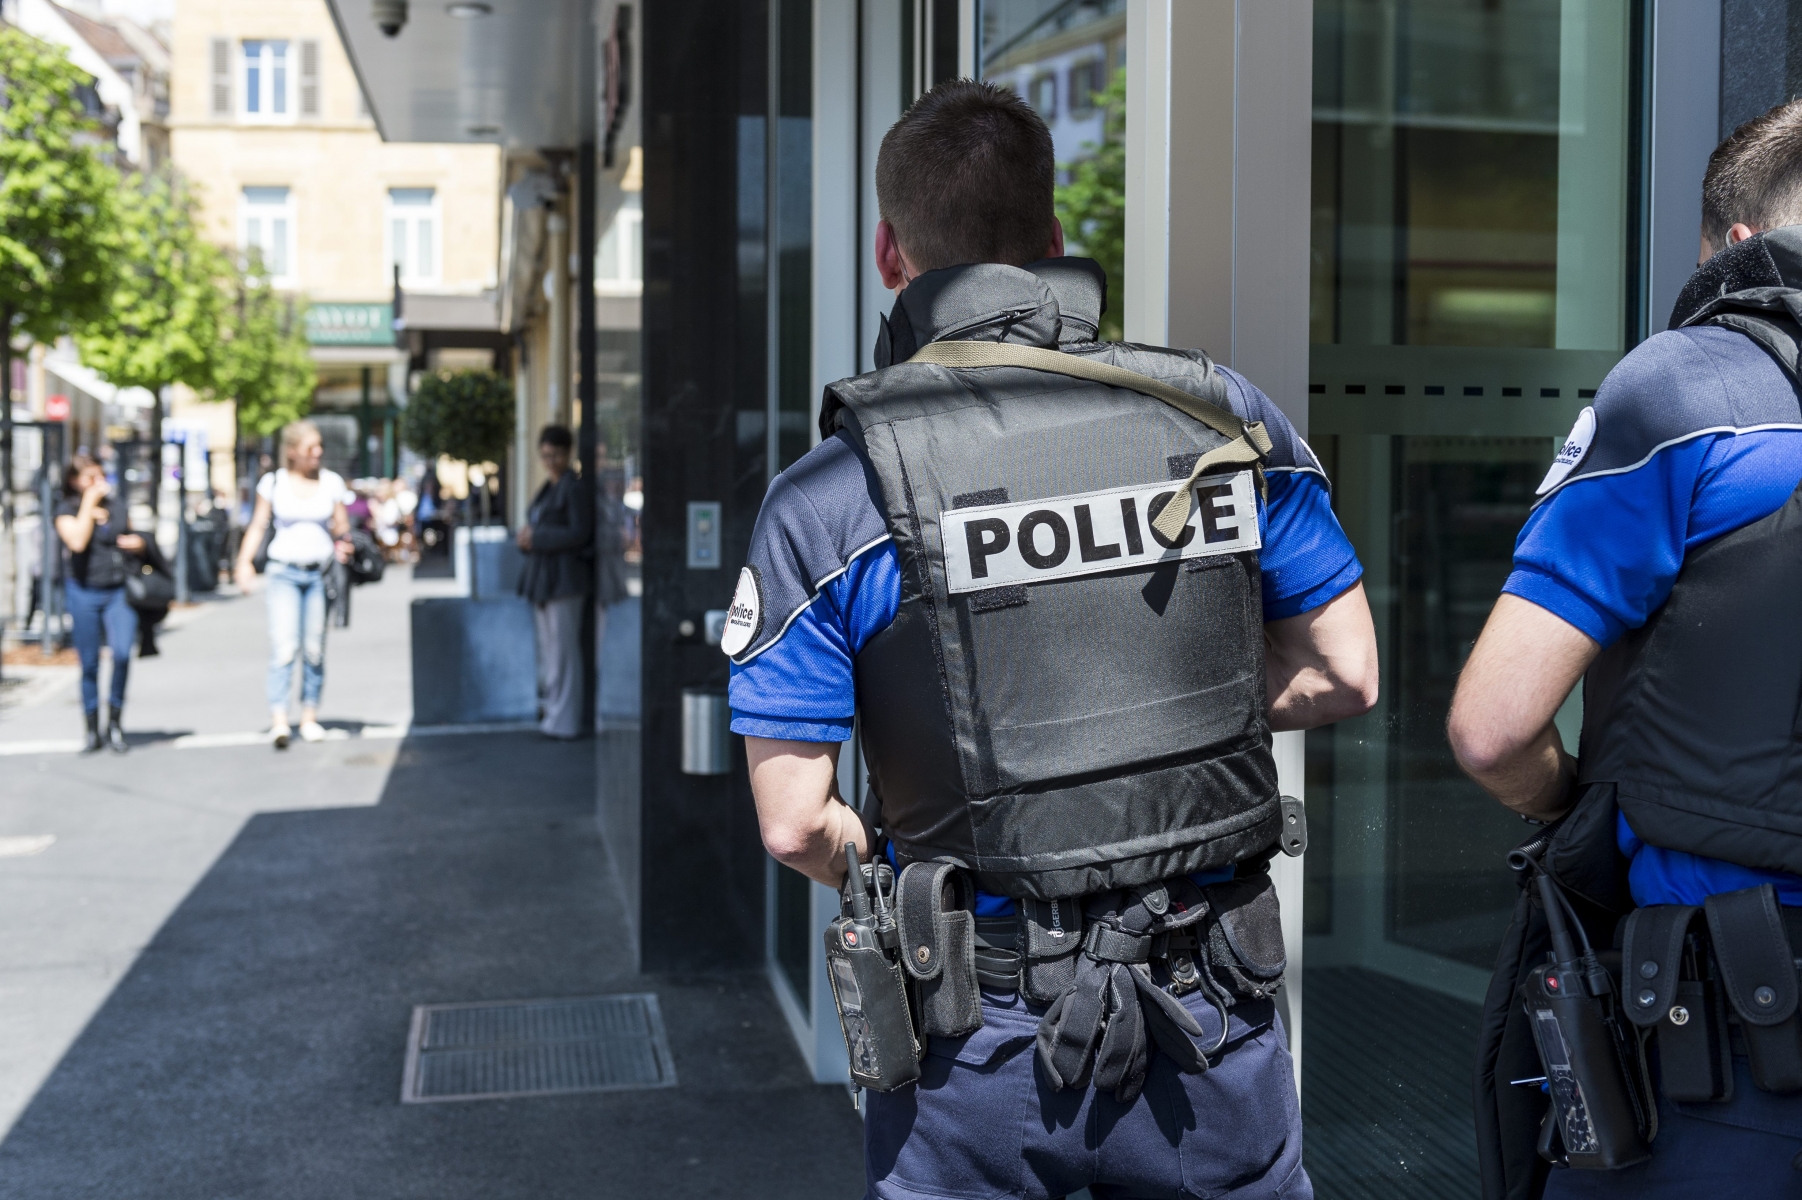 Moins de dix minutes après la transmission de l'alarme au centre-ville de Neuhchâtel, les policiers avaient pris position dans les alentours du commerce victime du braquage fictif.

Neuchatel, le 27.04.2015

Photo : Lucas Vuitel